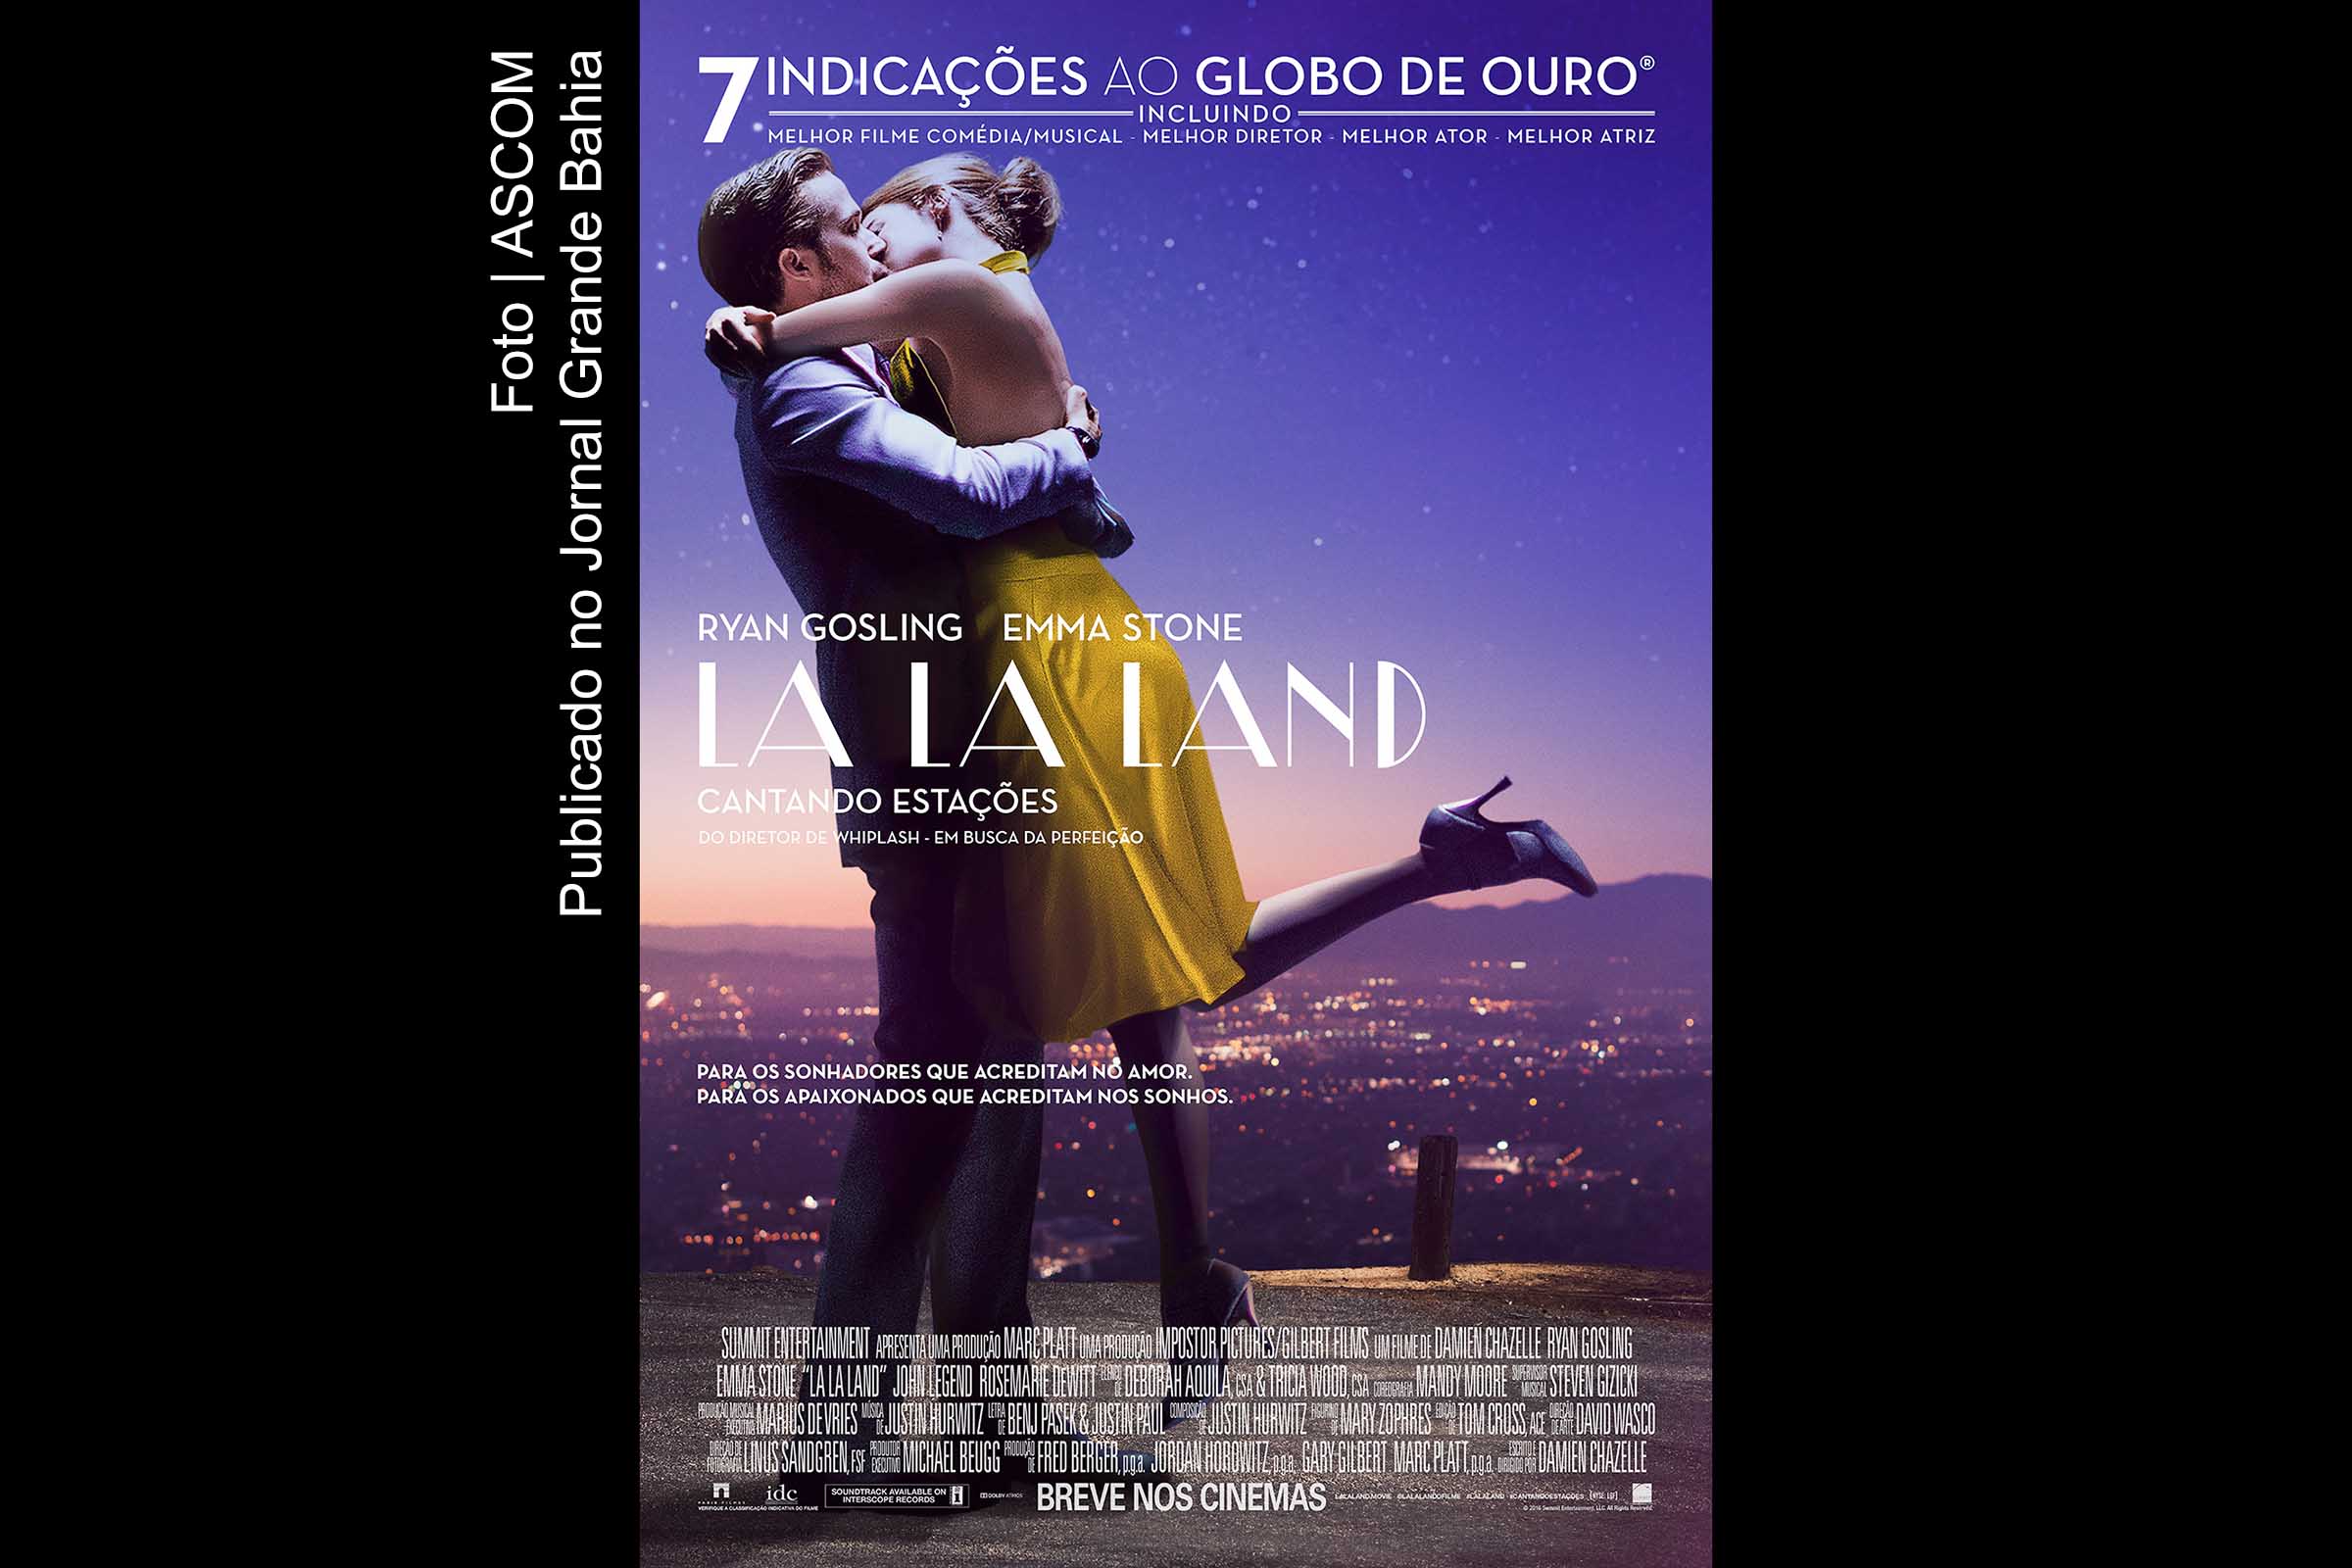 ‘La La Land - Cantando Estações’ foi o filme que mais ganhou troféus, seis estatuetas no total: melhor atriz, música original, trilha sonora, fotografia, design de produção e diretor, para Damien Chazelle.